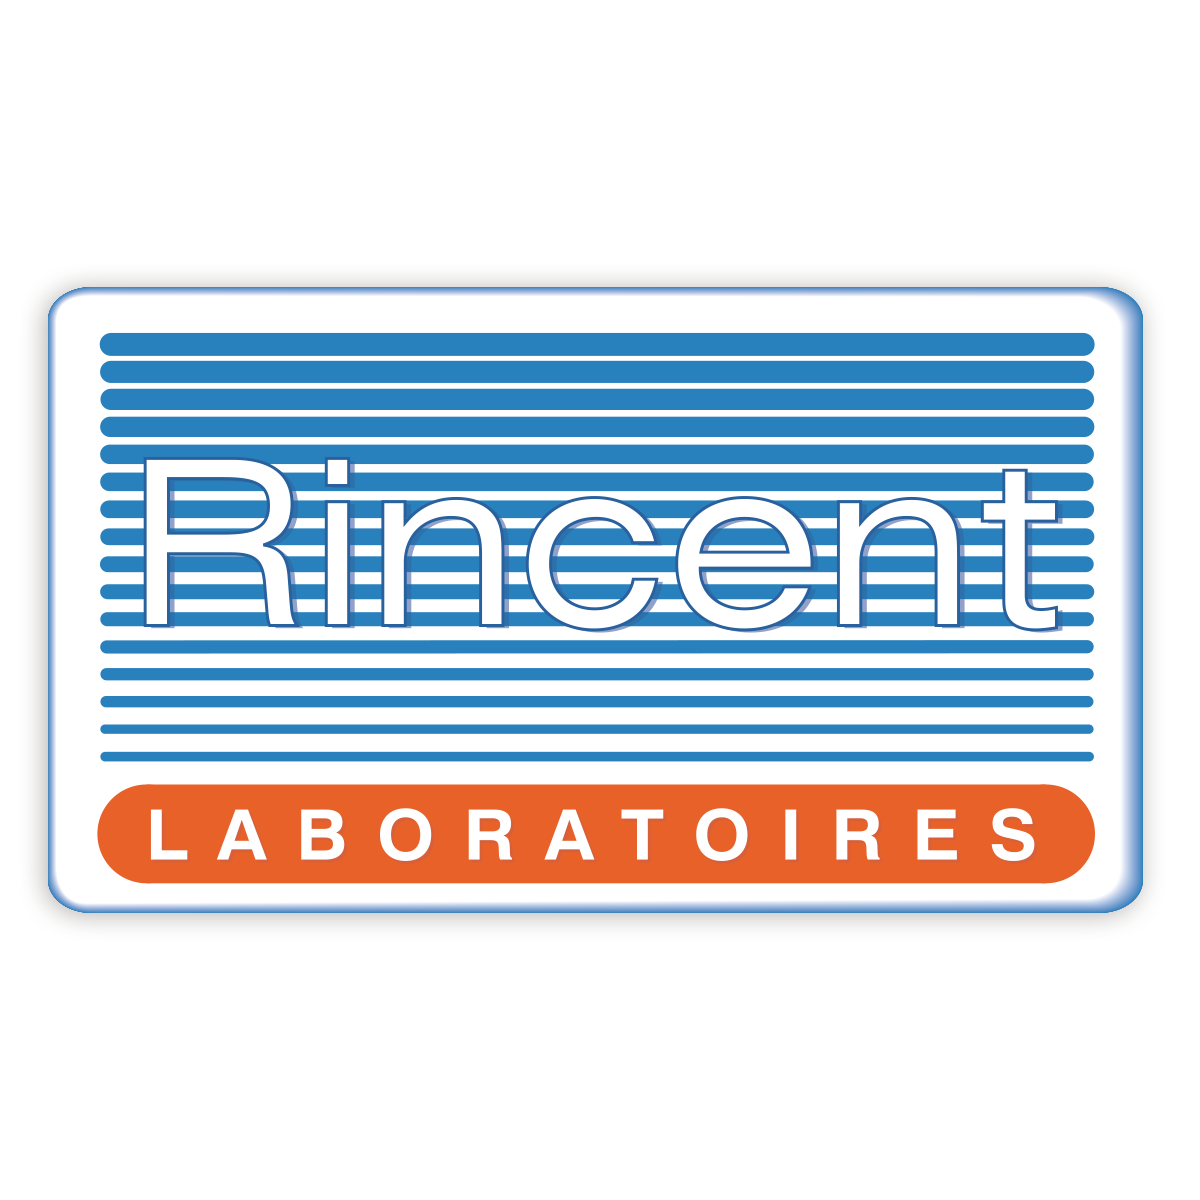 Rincent Laboratoires - Technicien(ne) maintenance et production (H/F) CDI